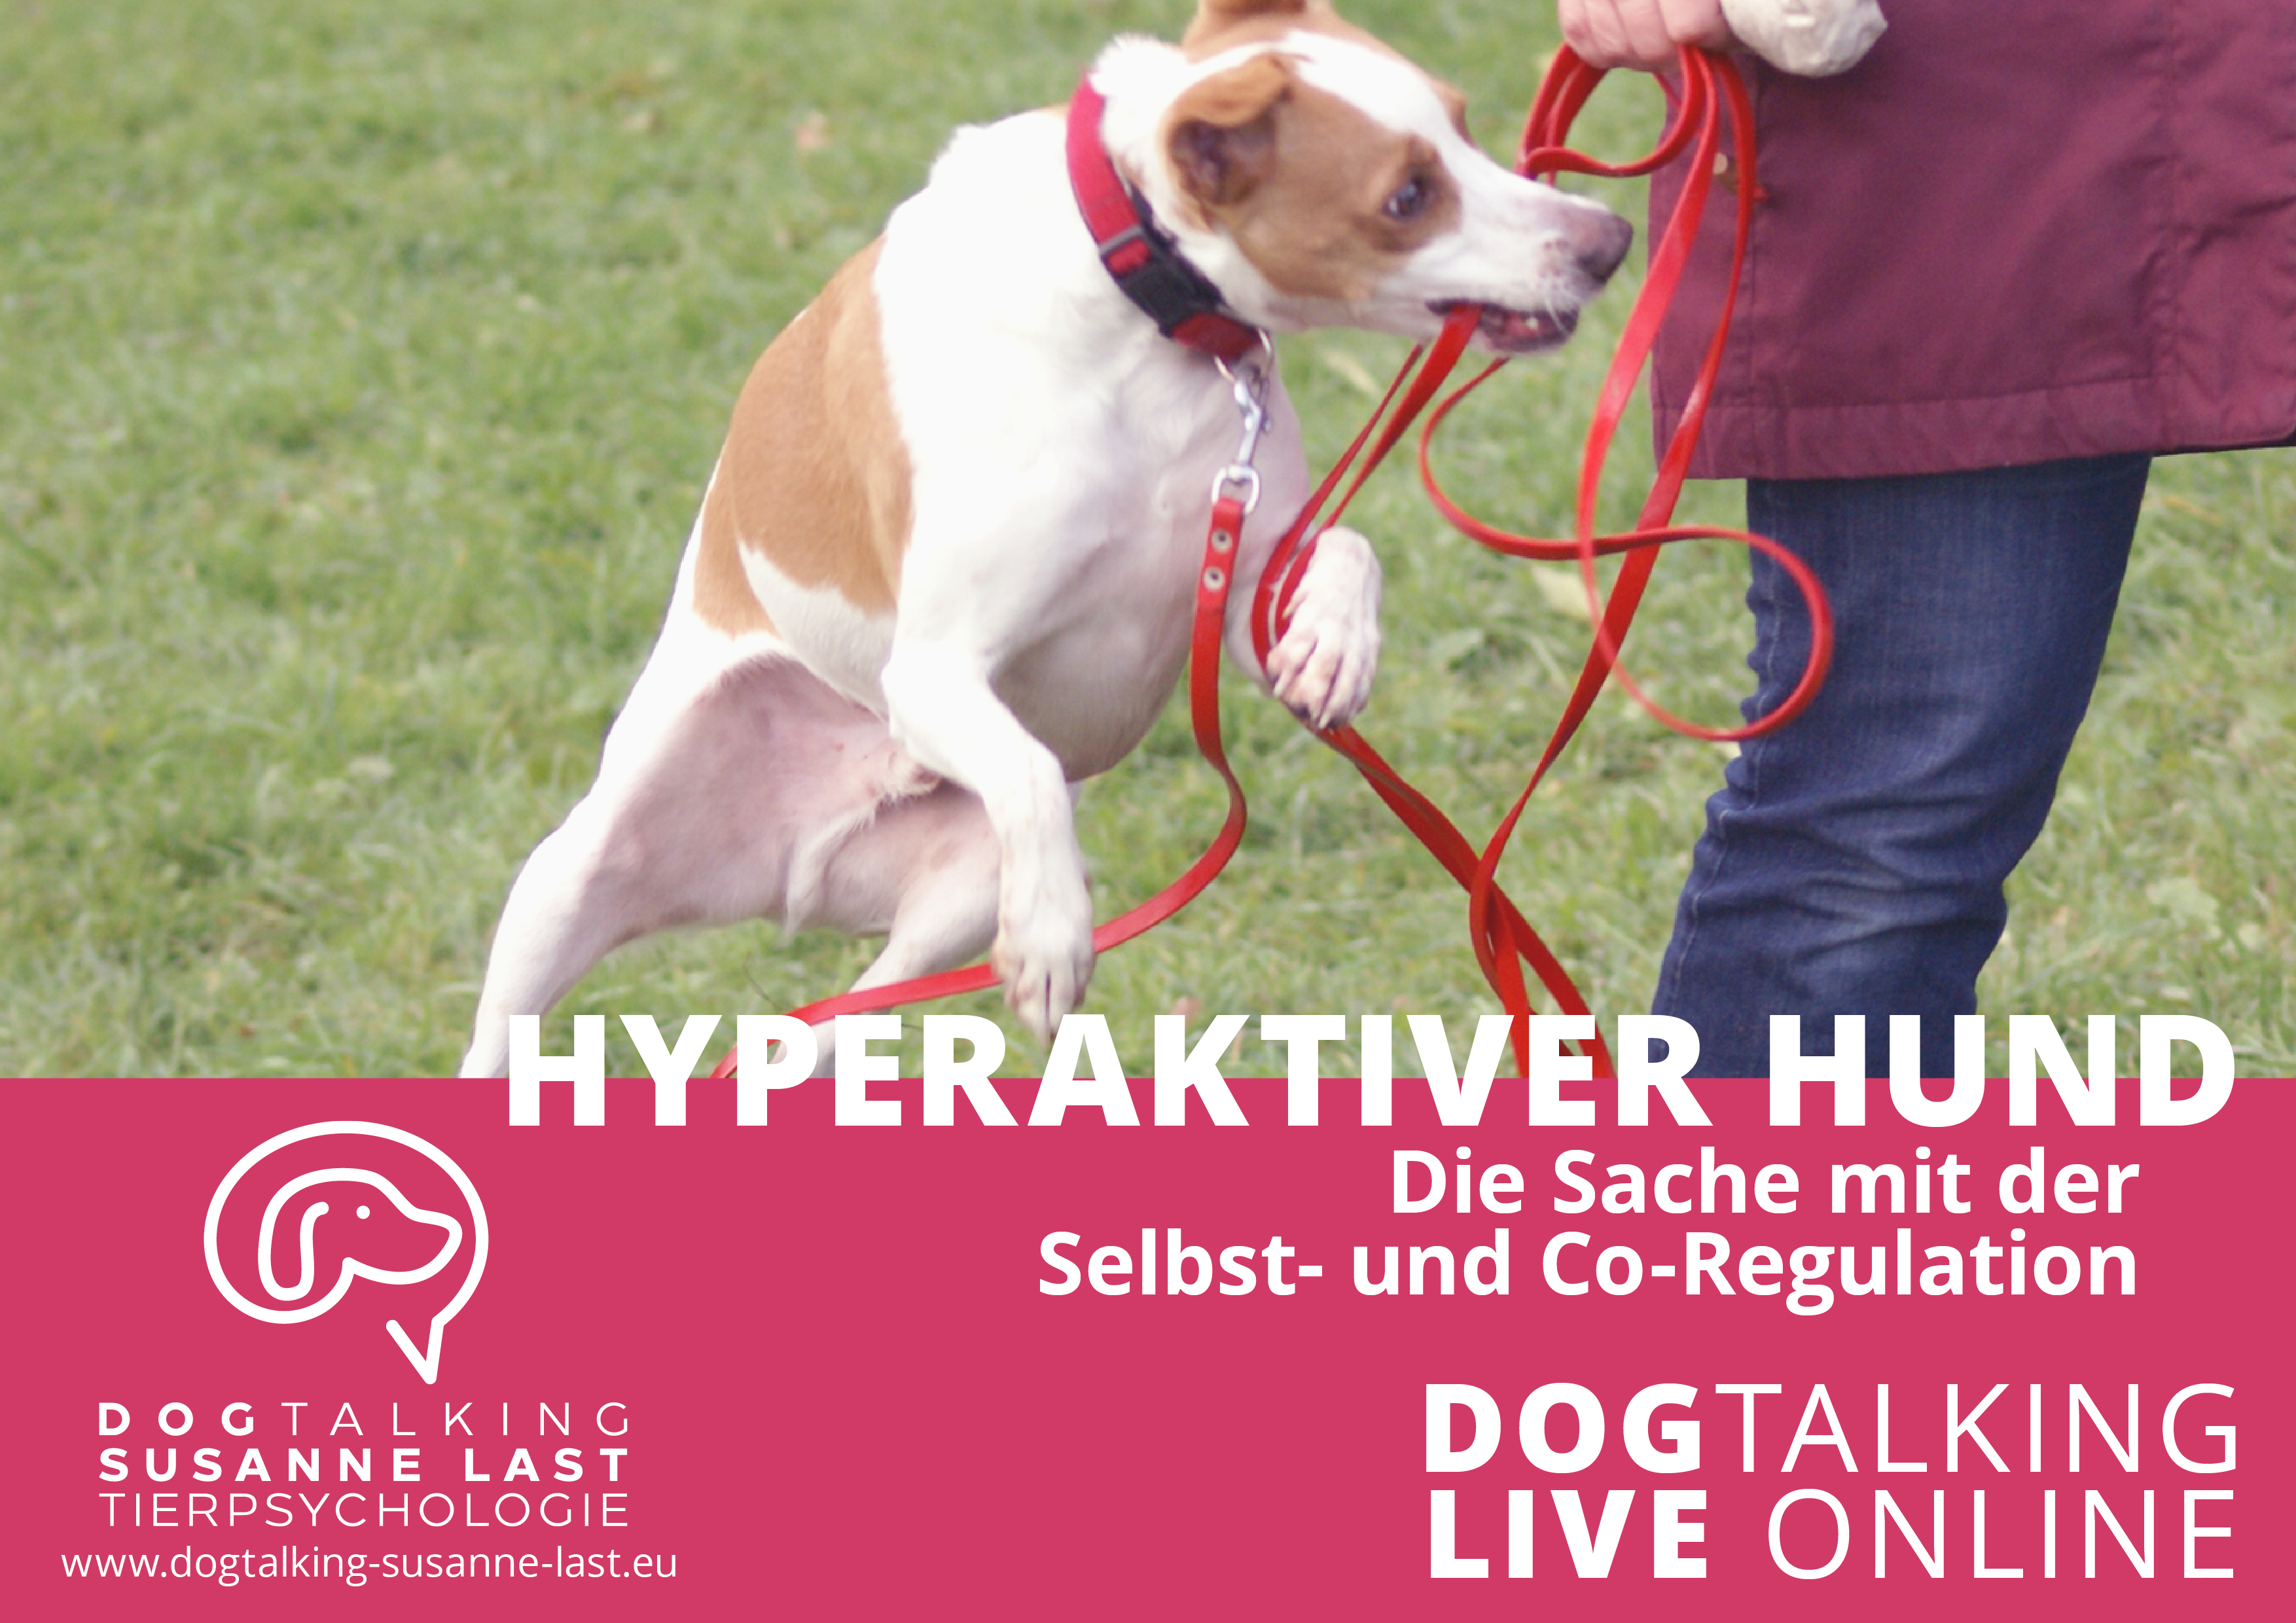 Hyperaktiver Hund - Die Sache mit der Selbst- und Co-Regulation - DOGTALKING live online Aufzeichnung 